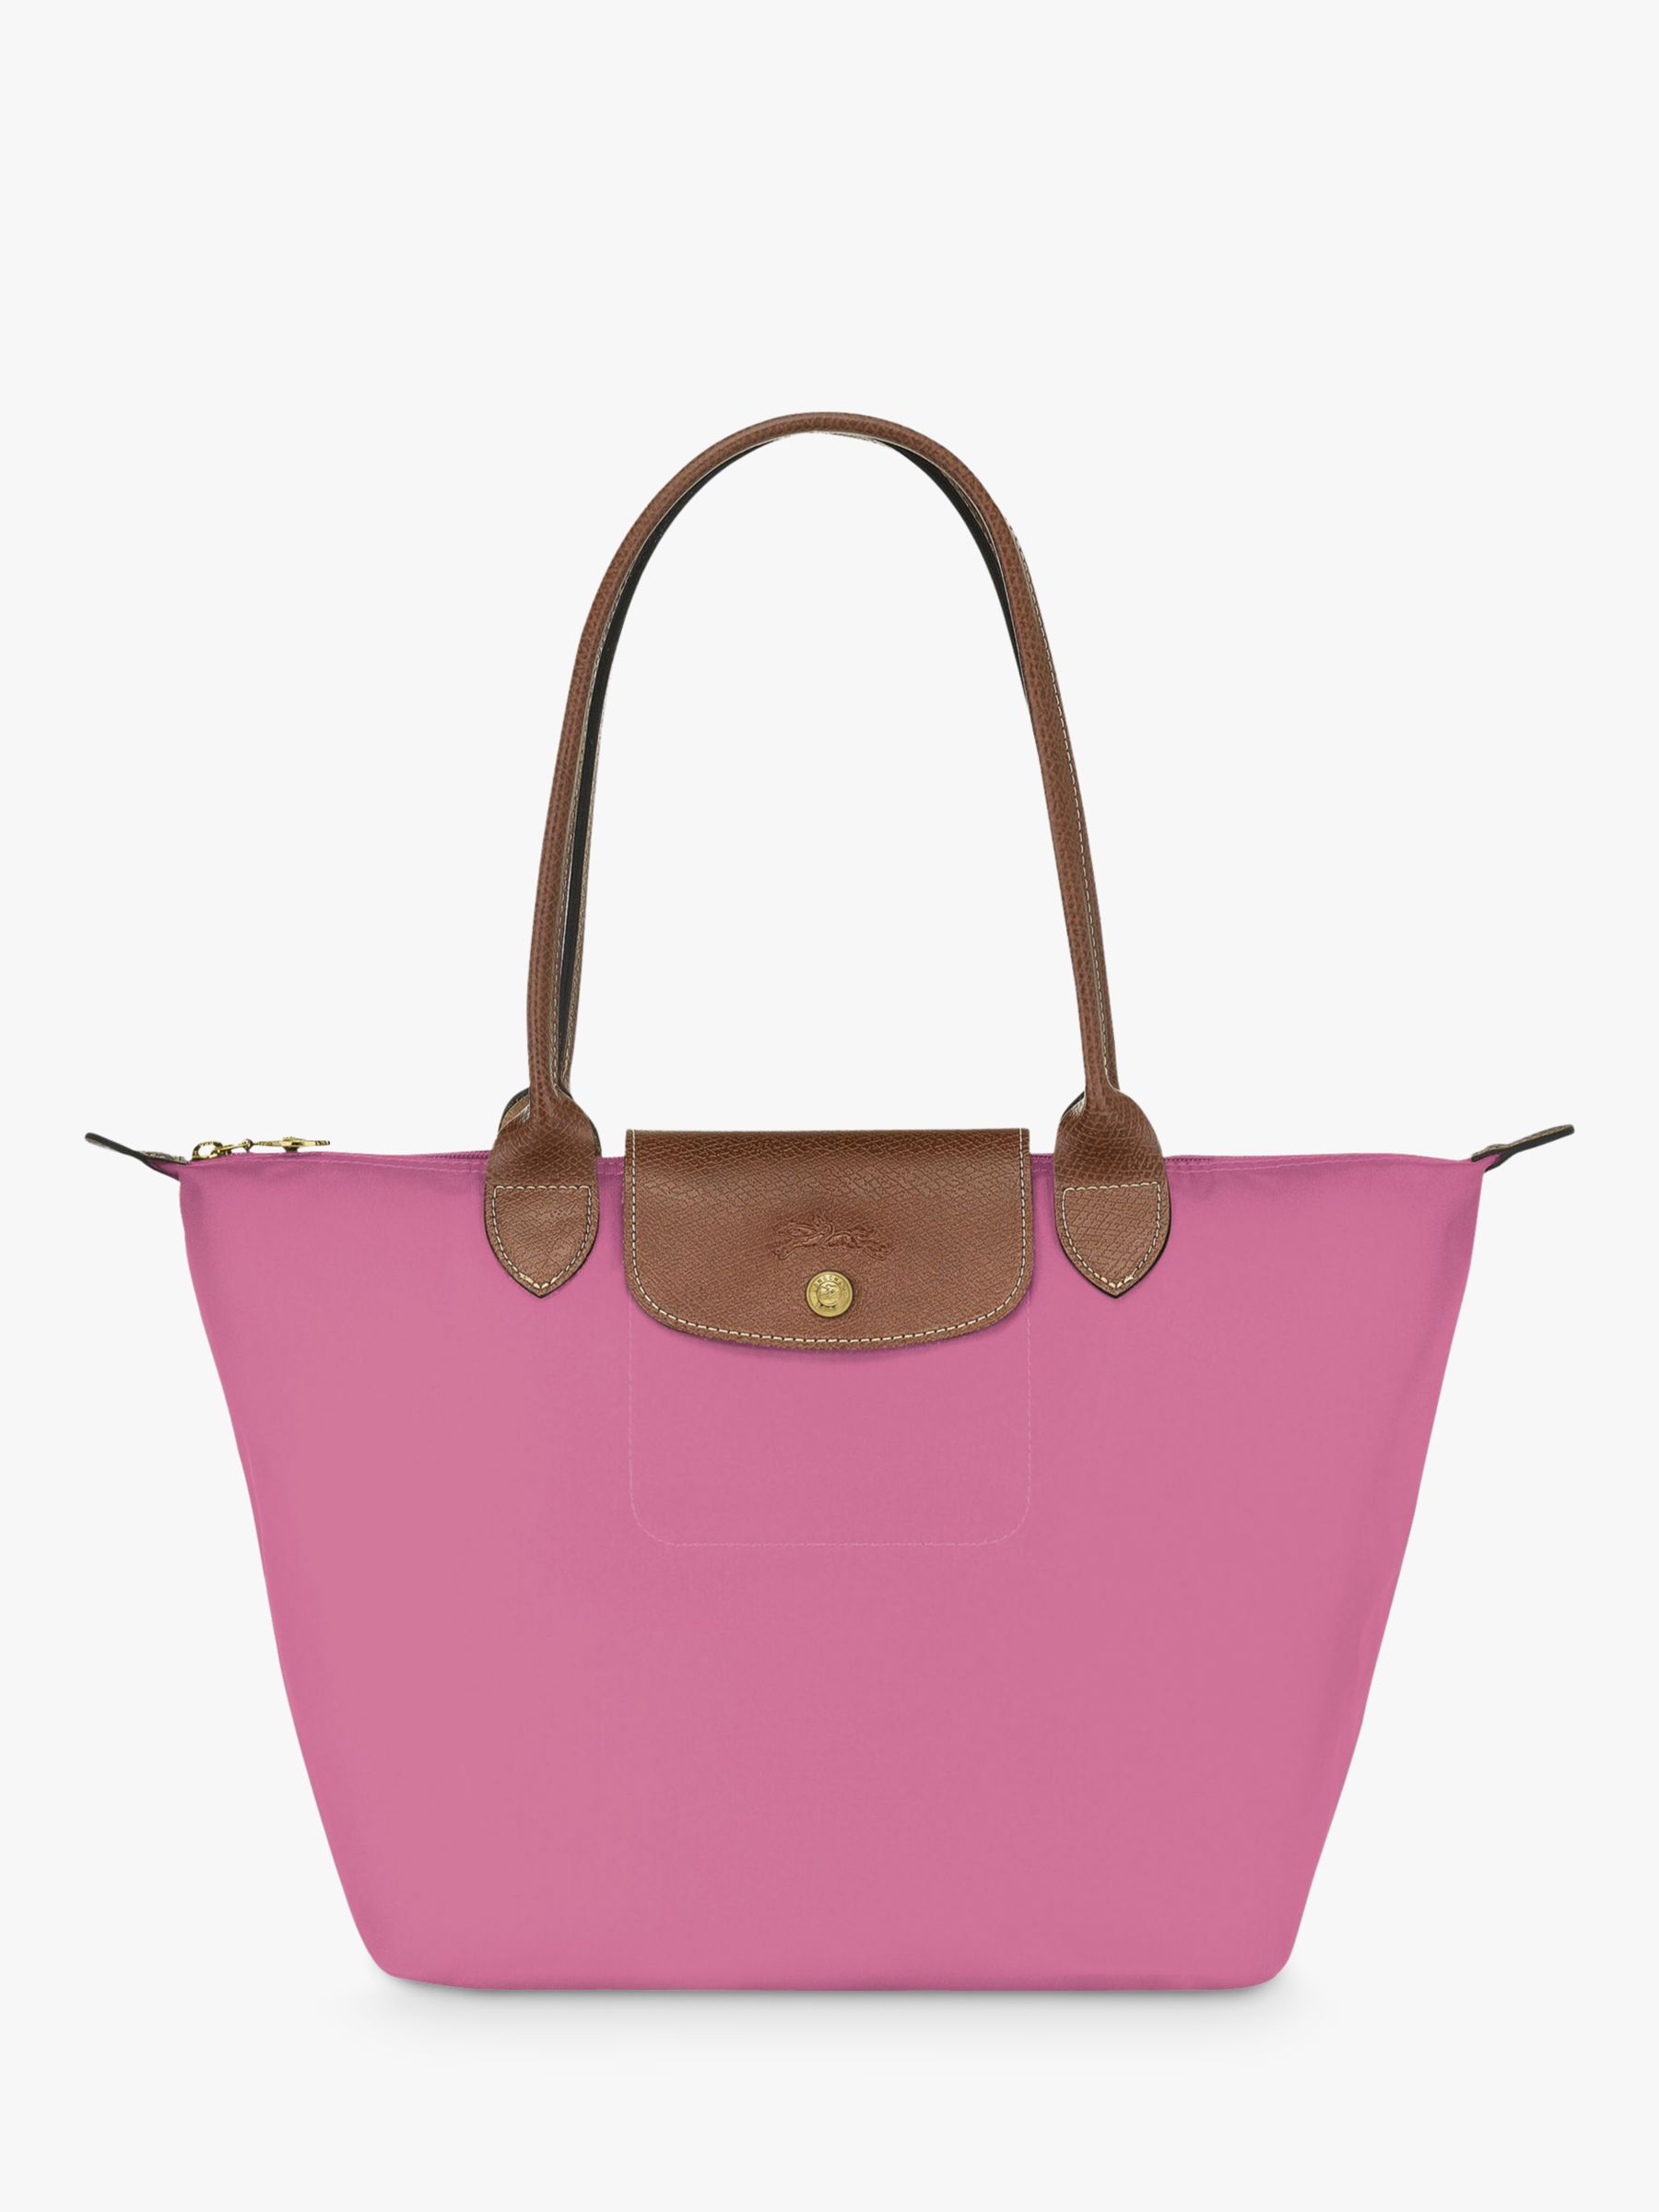 longchamp travel bag pink